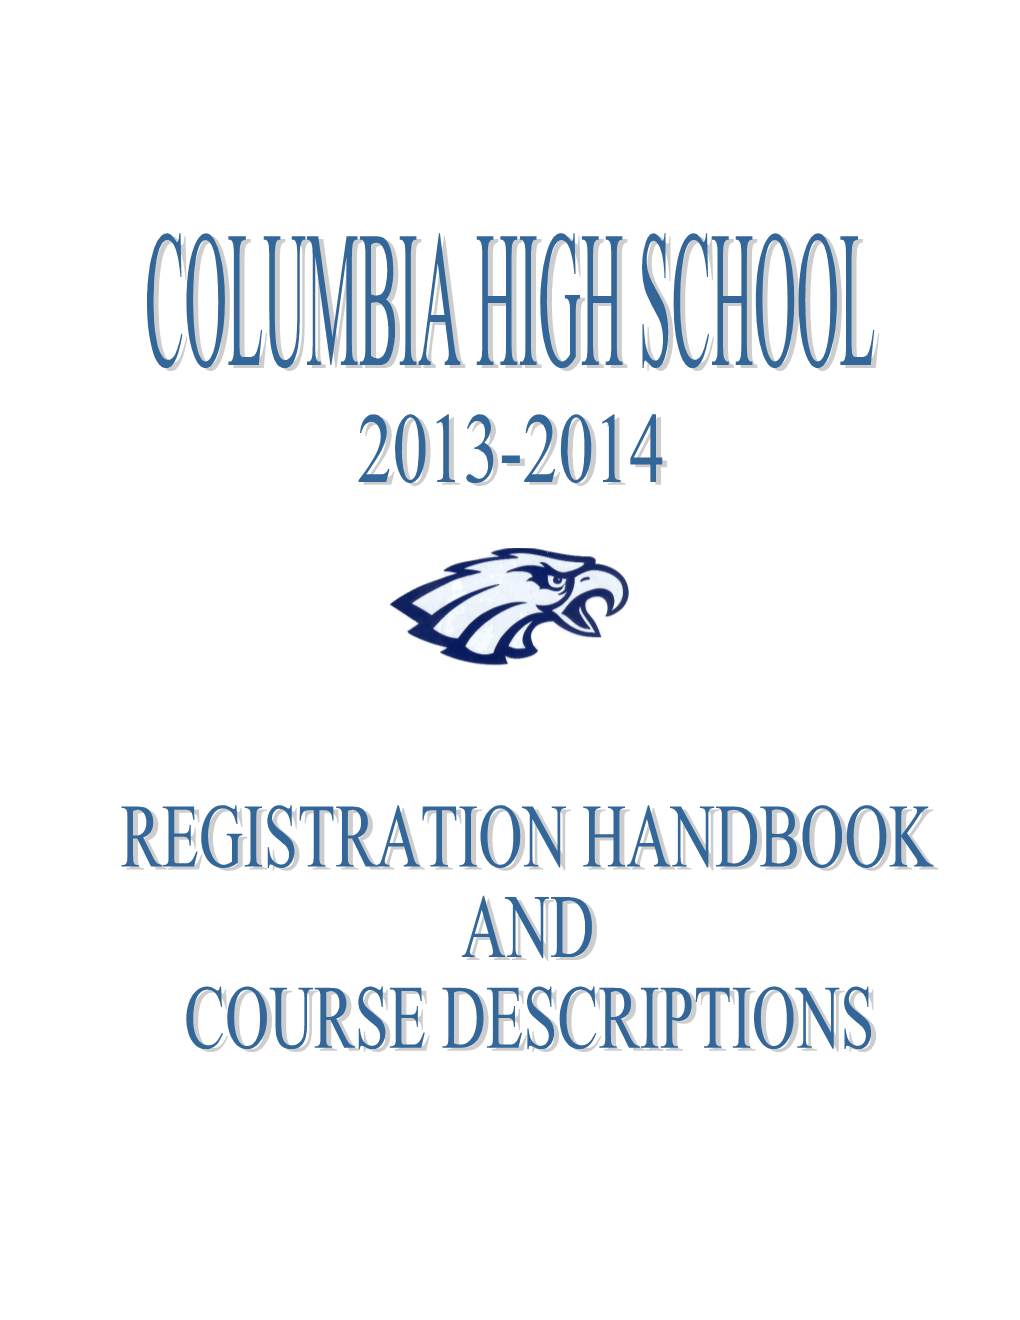 Registration Handbook & Course Descriptions